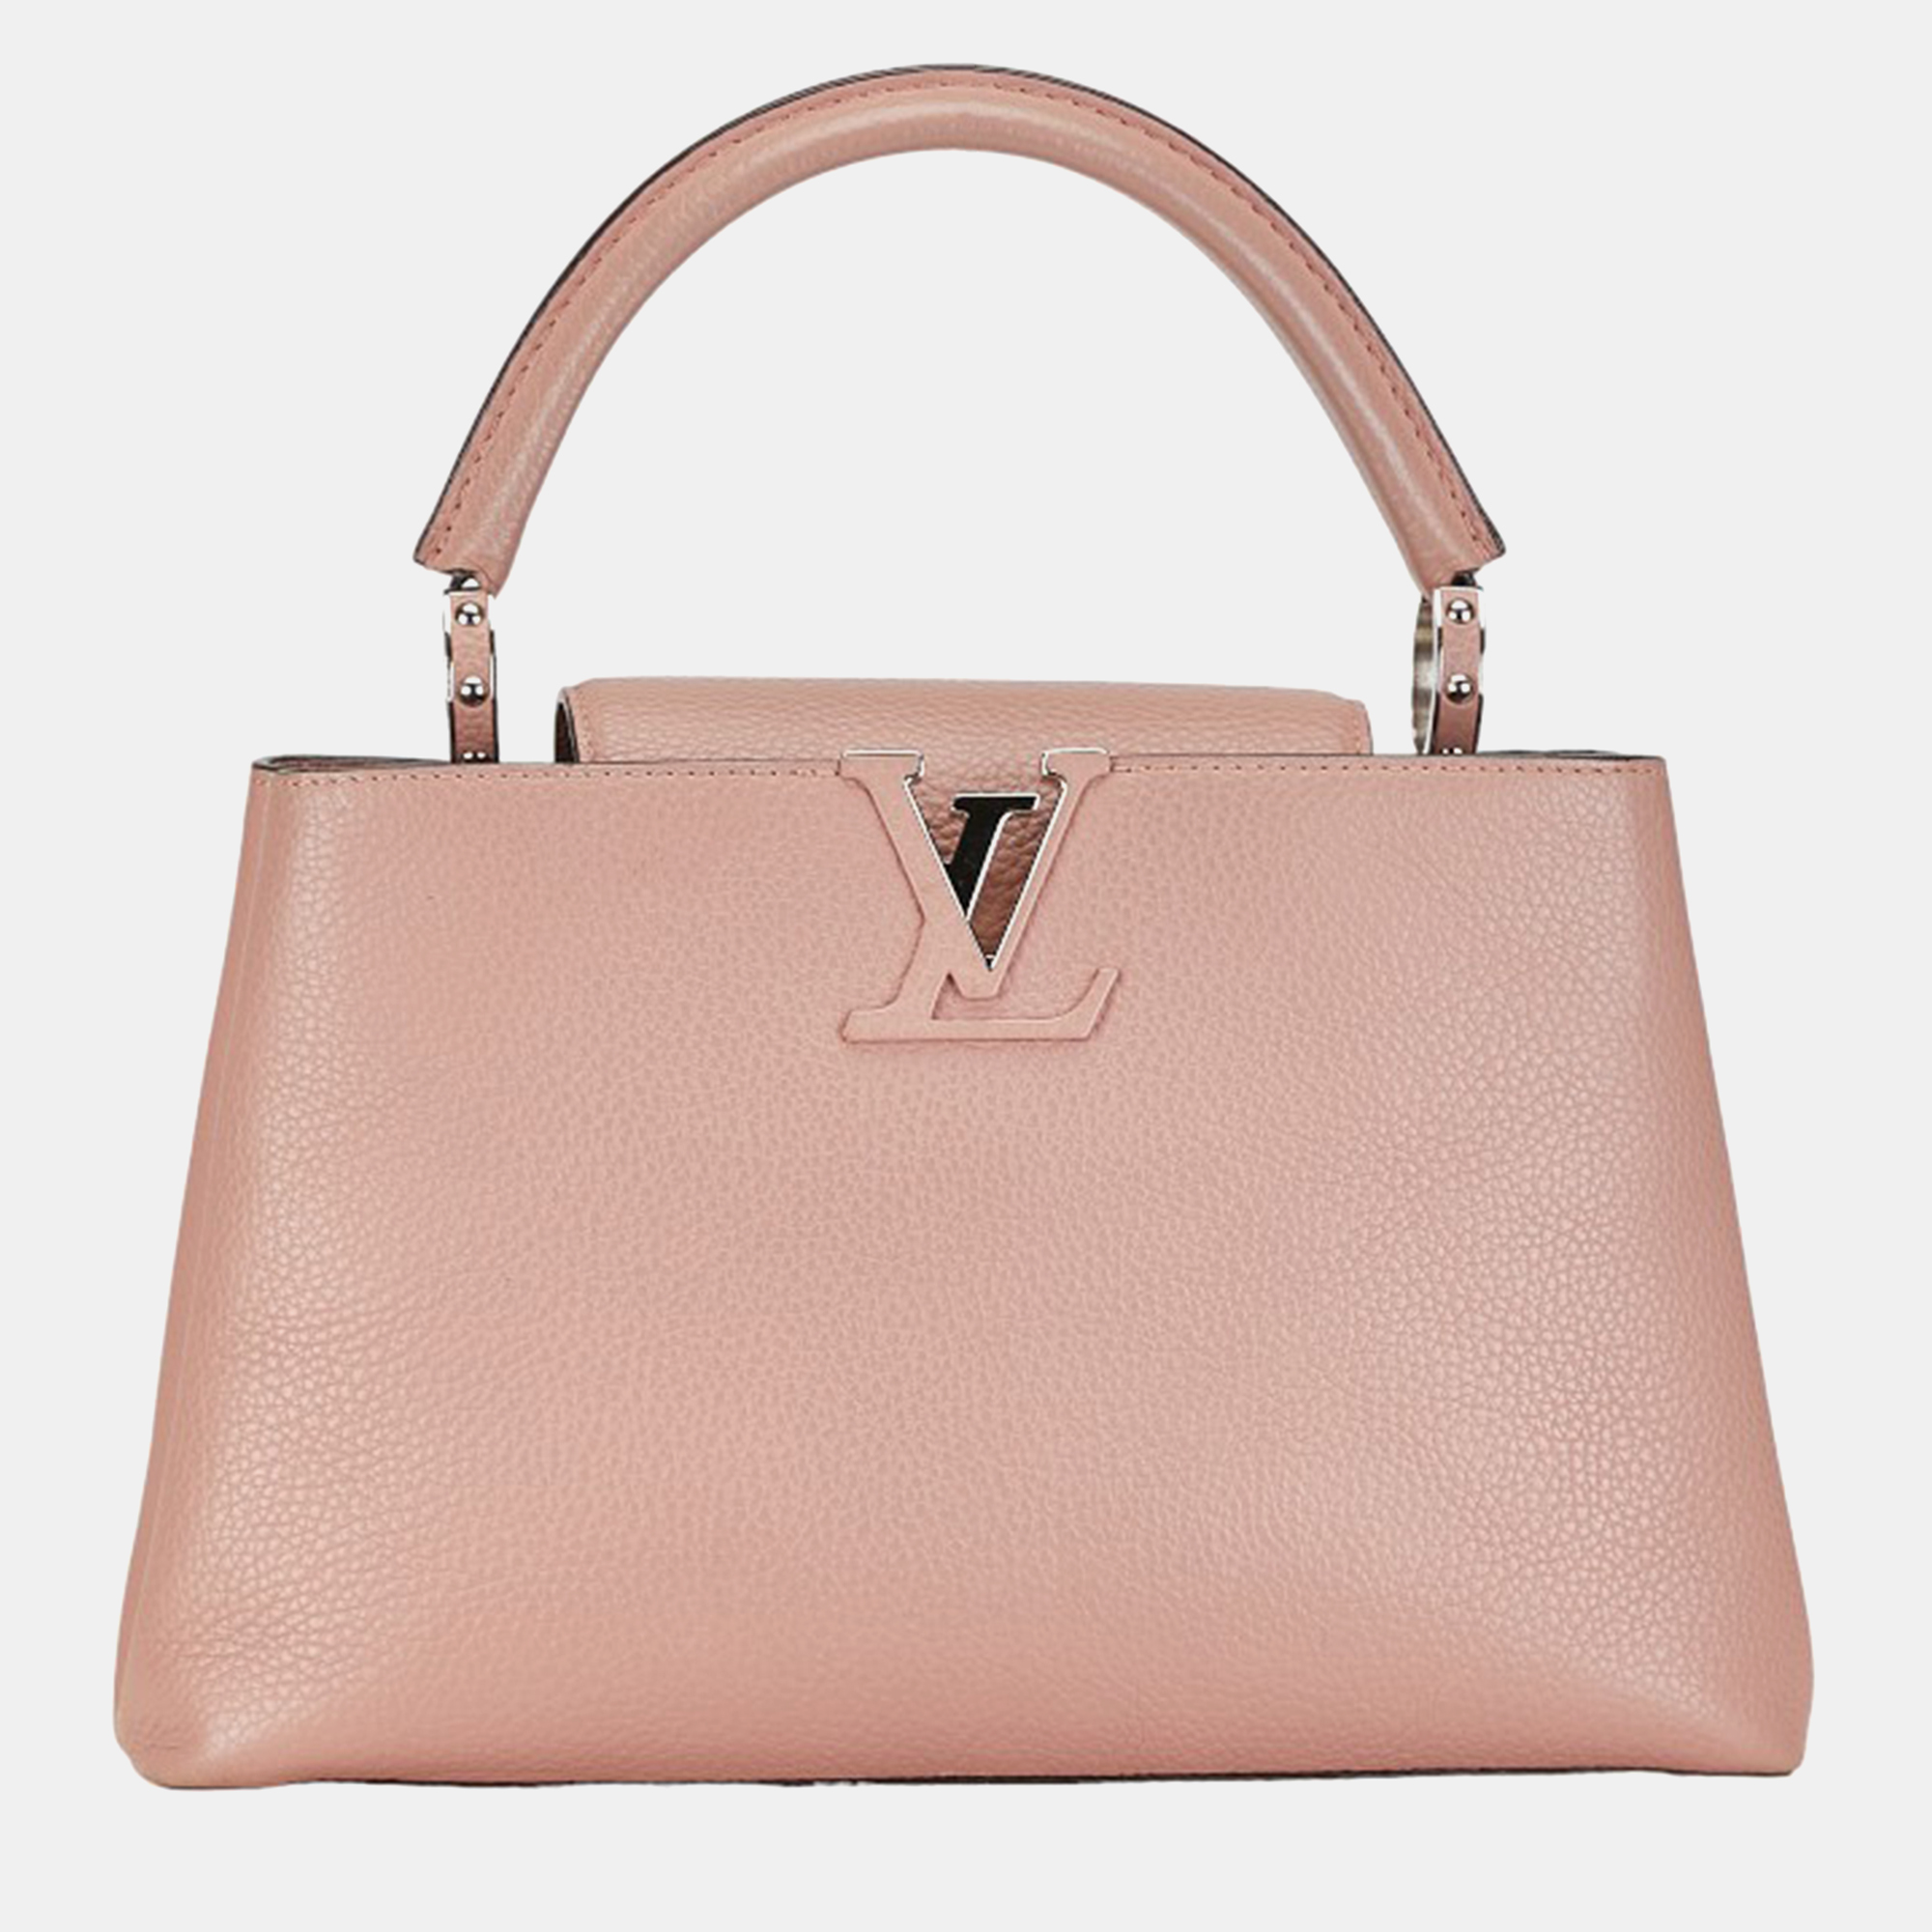 Louis vuitton pink leather capucines pm shoulder bag